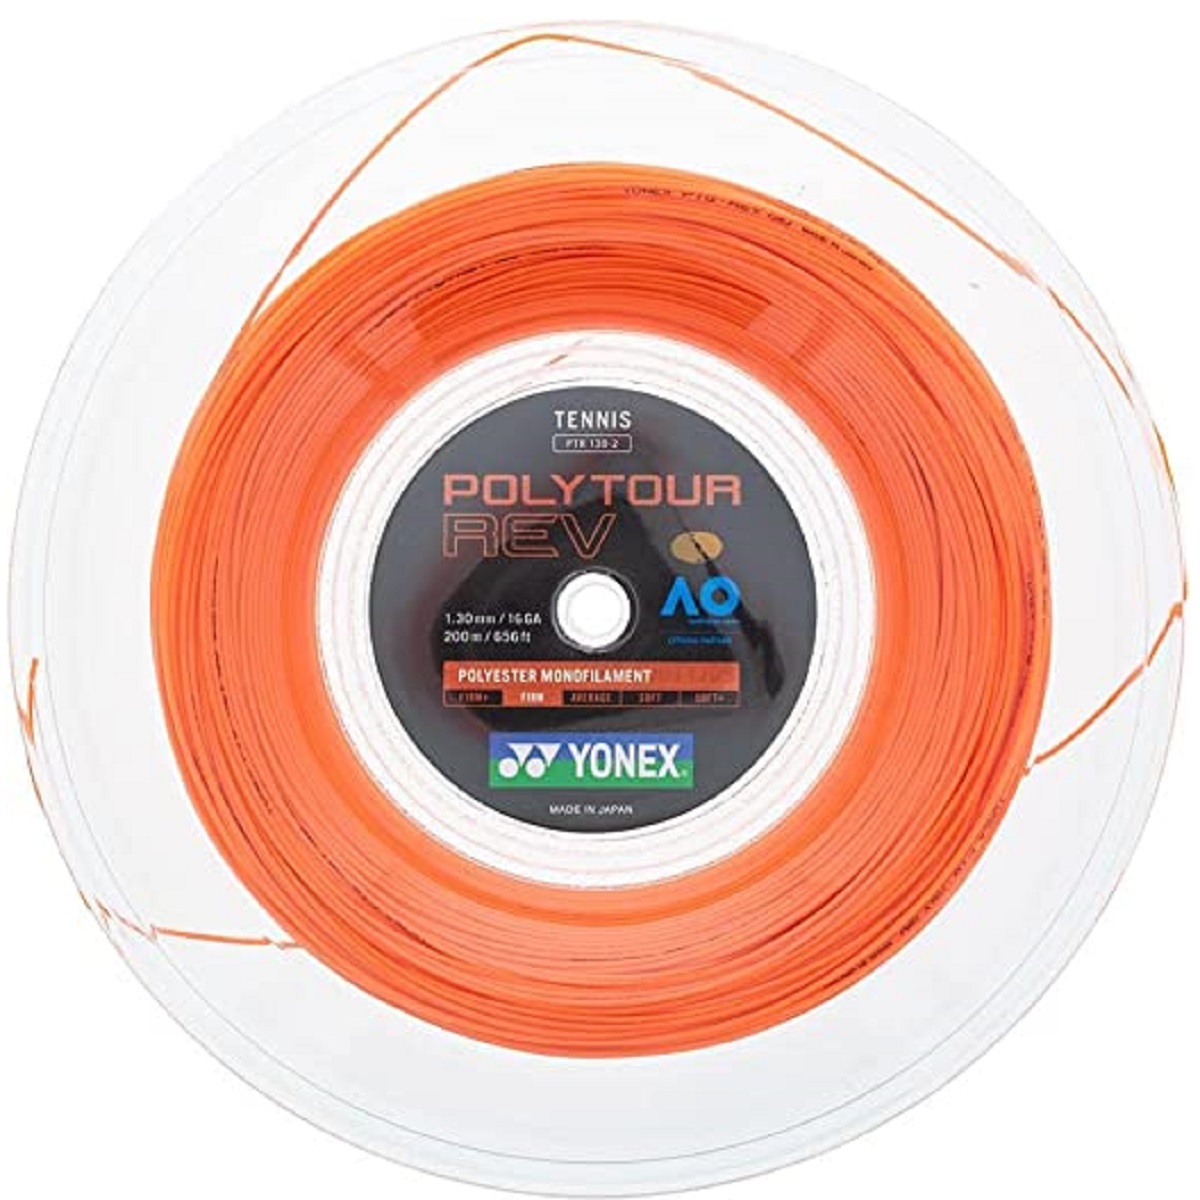 https://www.doittennis.com/media/images/PTGRV-2BO-yonex-polyyour-rev-tennis-string-reel-orange.jpg